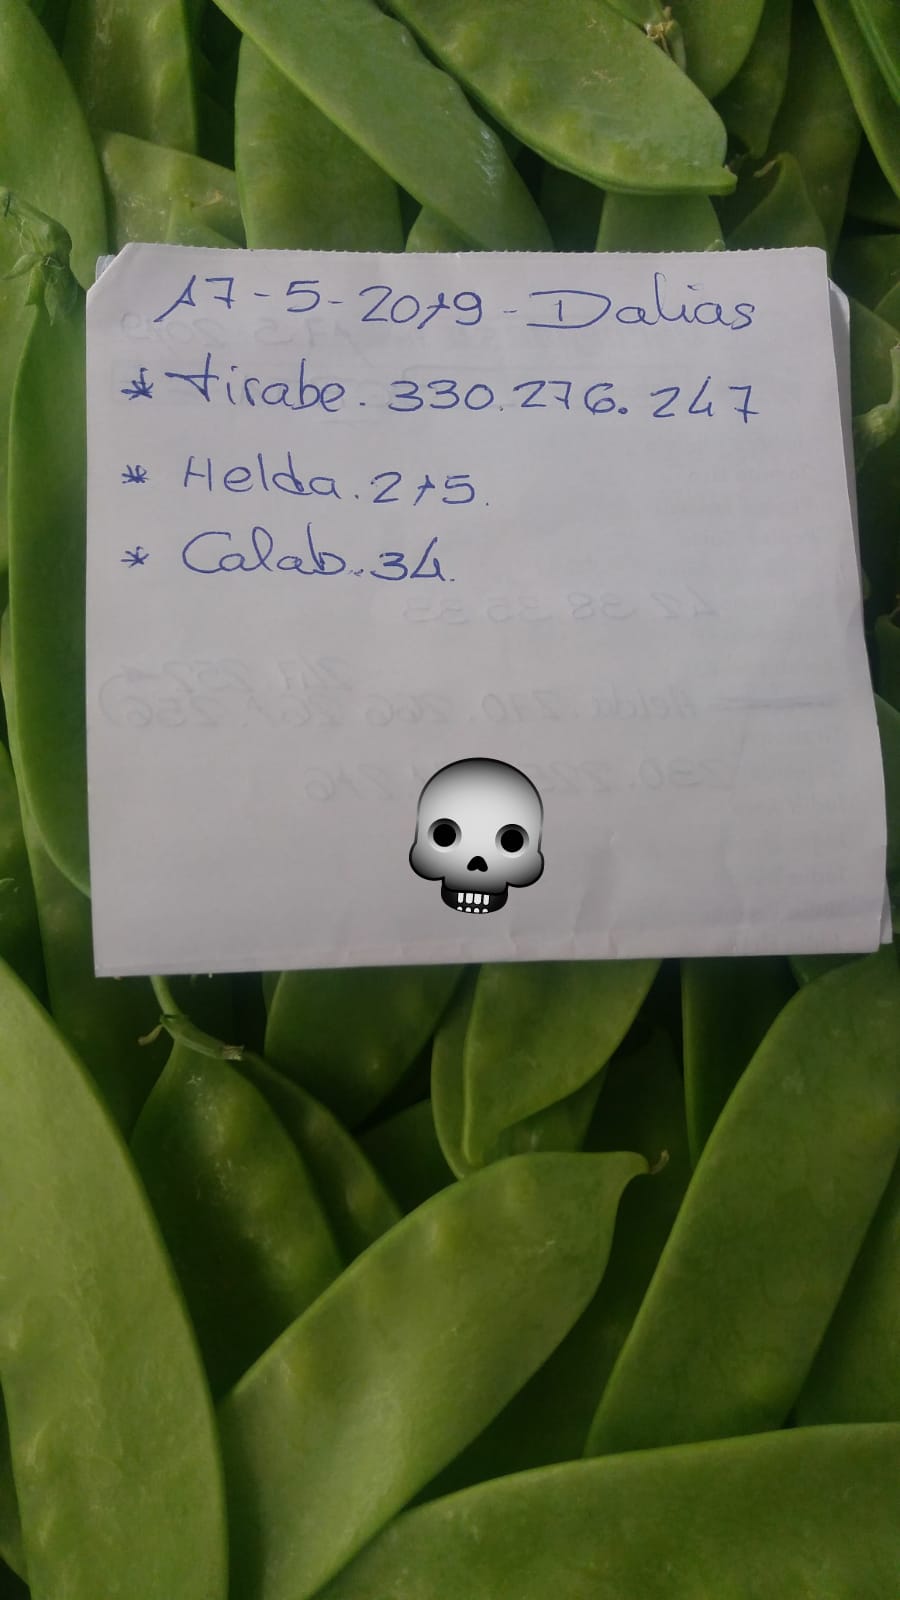 Subasta hortofrutícola AgroEjido Dalias 17 de Mayo 2019